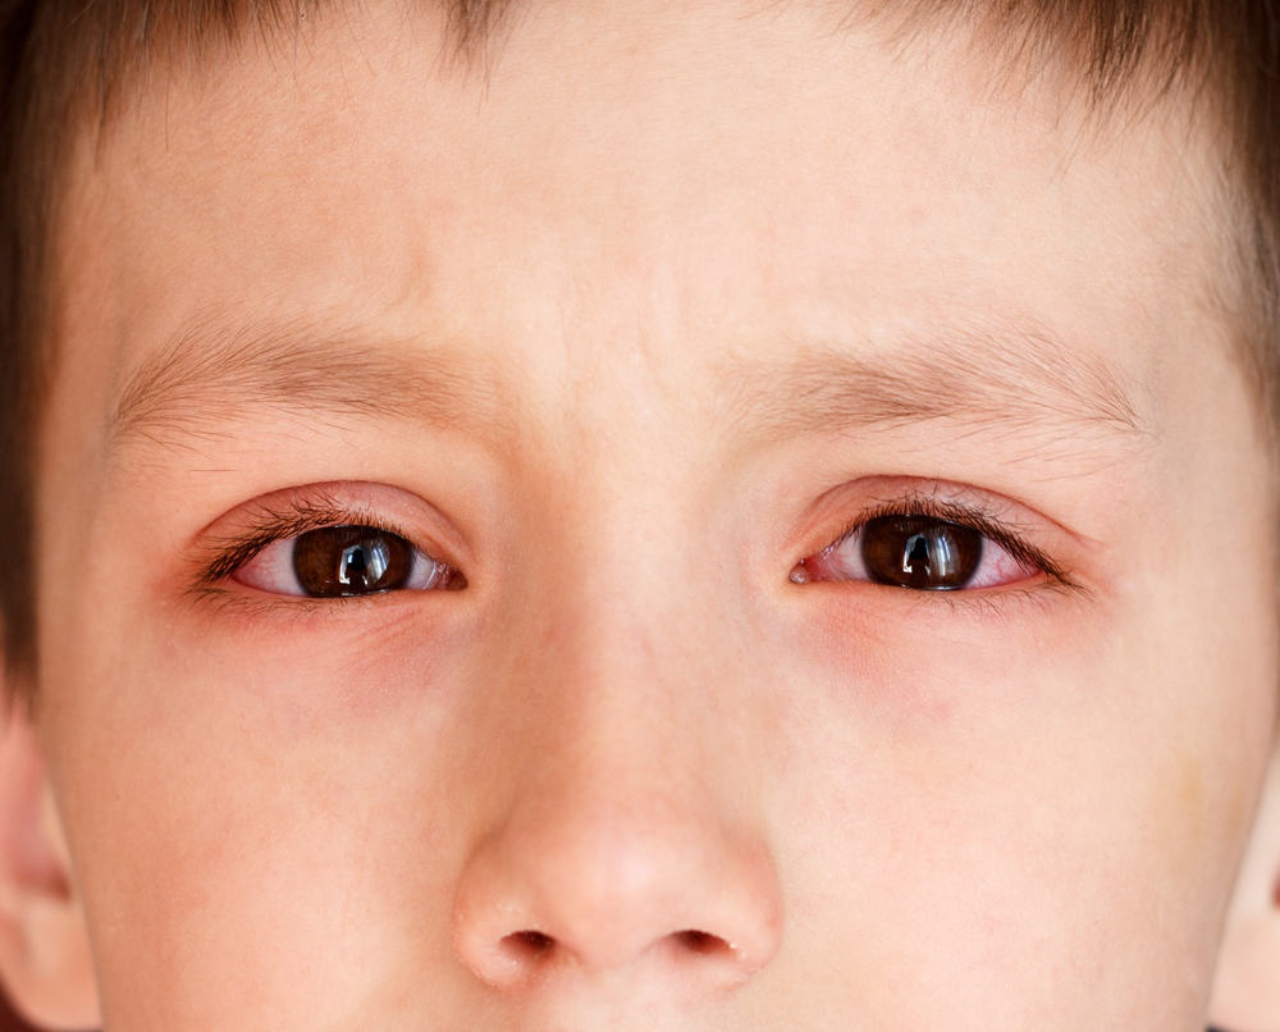 Có những phương pháp và liệu pháp nào để điều trị đau mắt đỏ?
